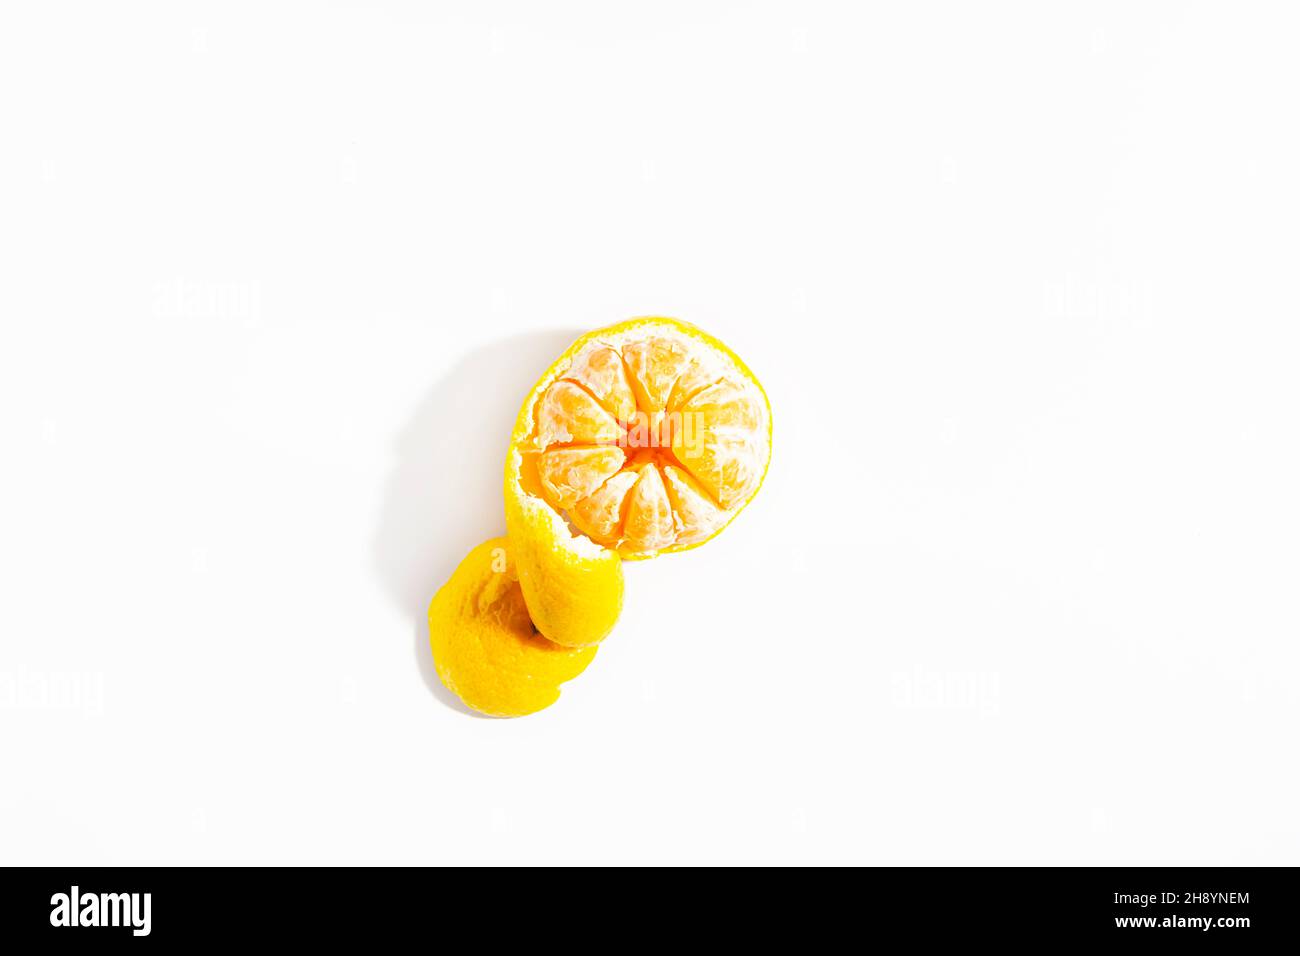 La metà pelata di mandarino con una buccia a forma di spirale giace su uno sfondo bianco. Isolare. Stile di vita. Primo piano. Vista dall'alto. Foto orizzontale. Foto di alta qualità Foto Stock